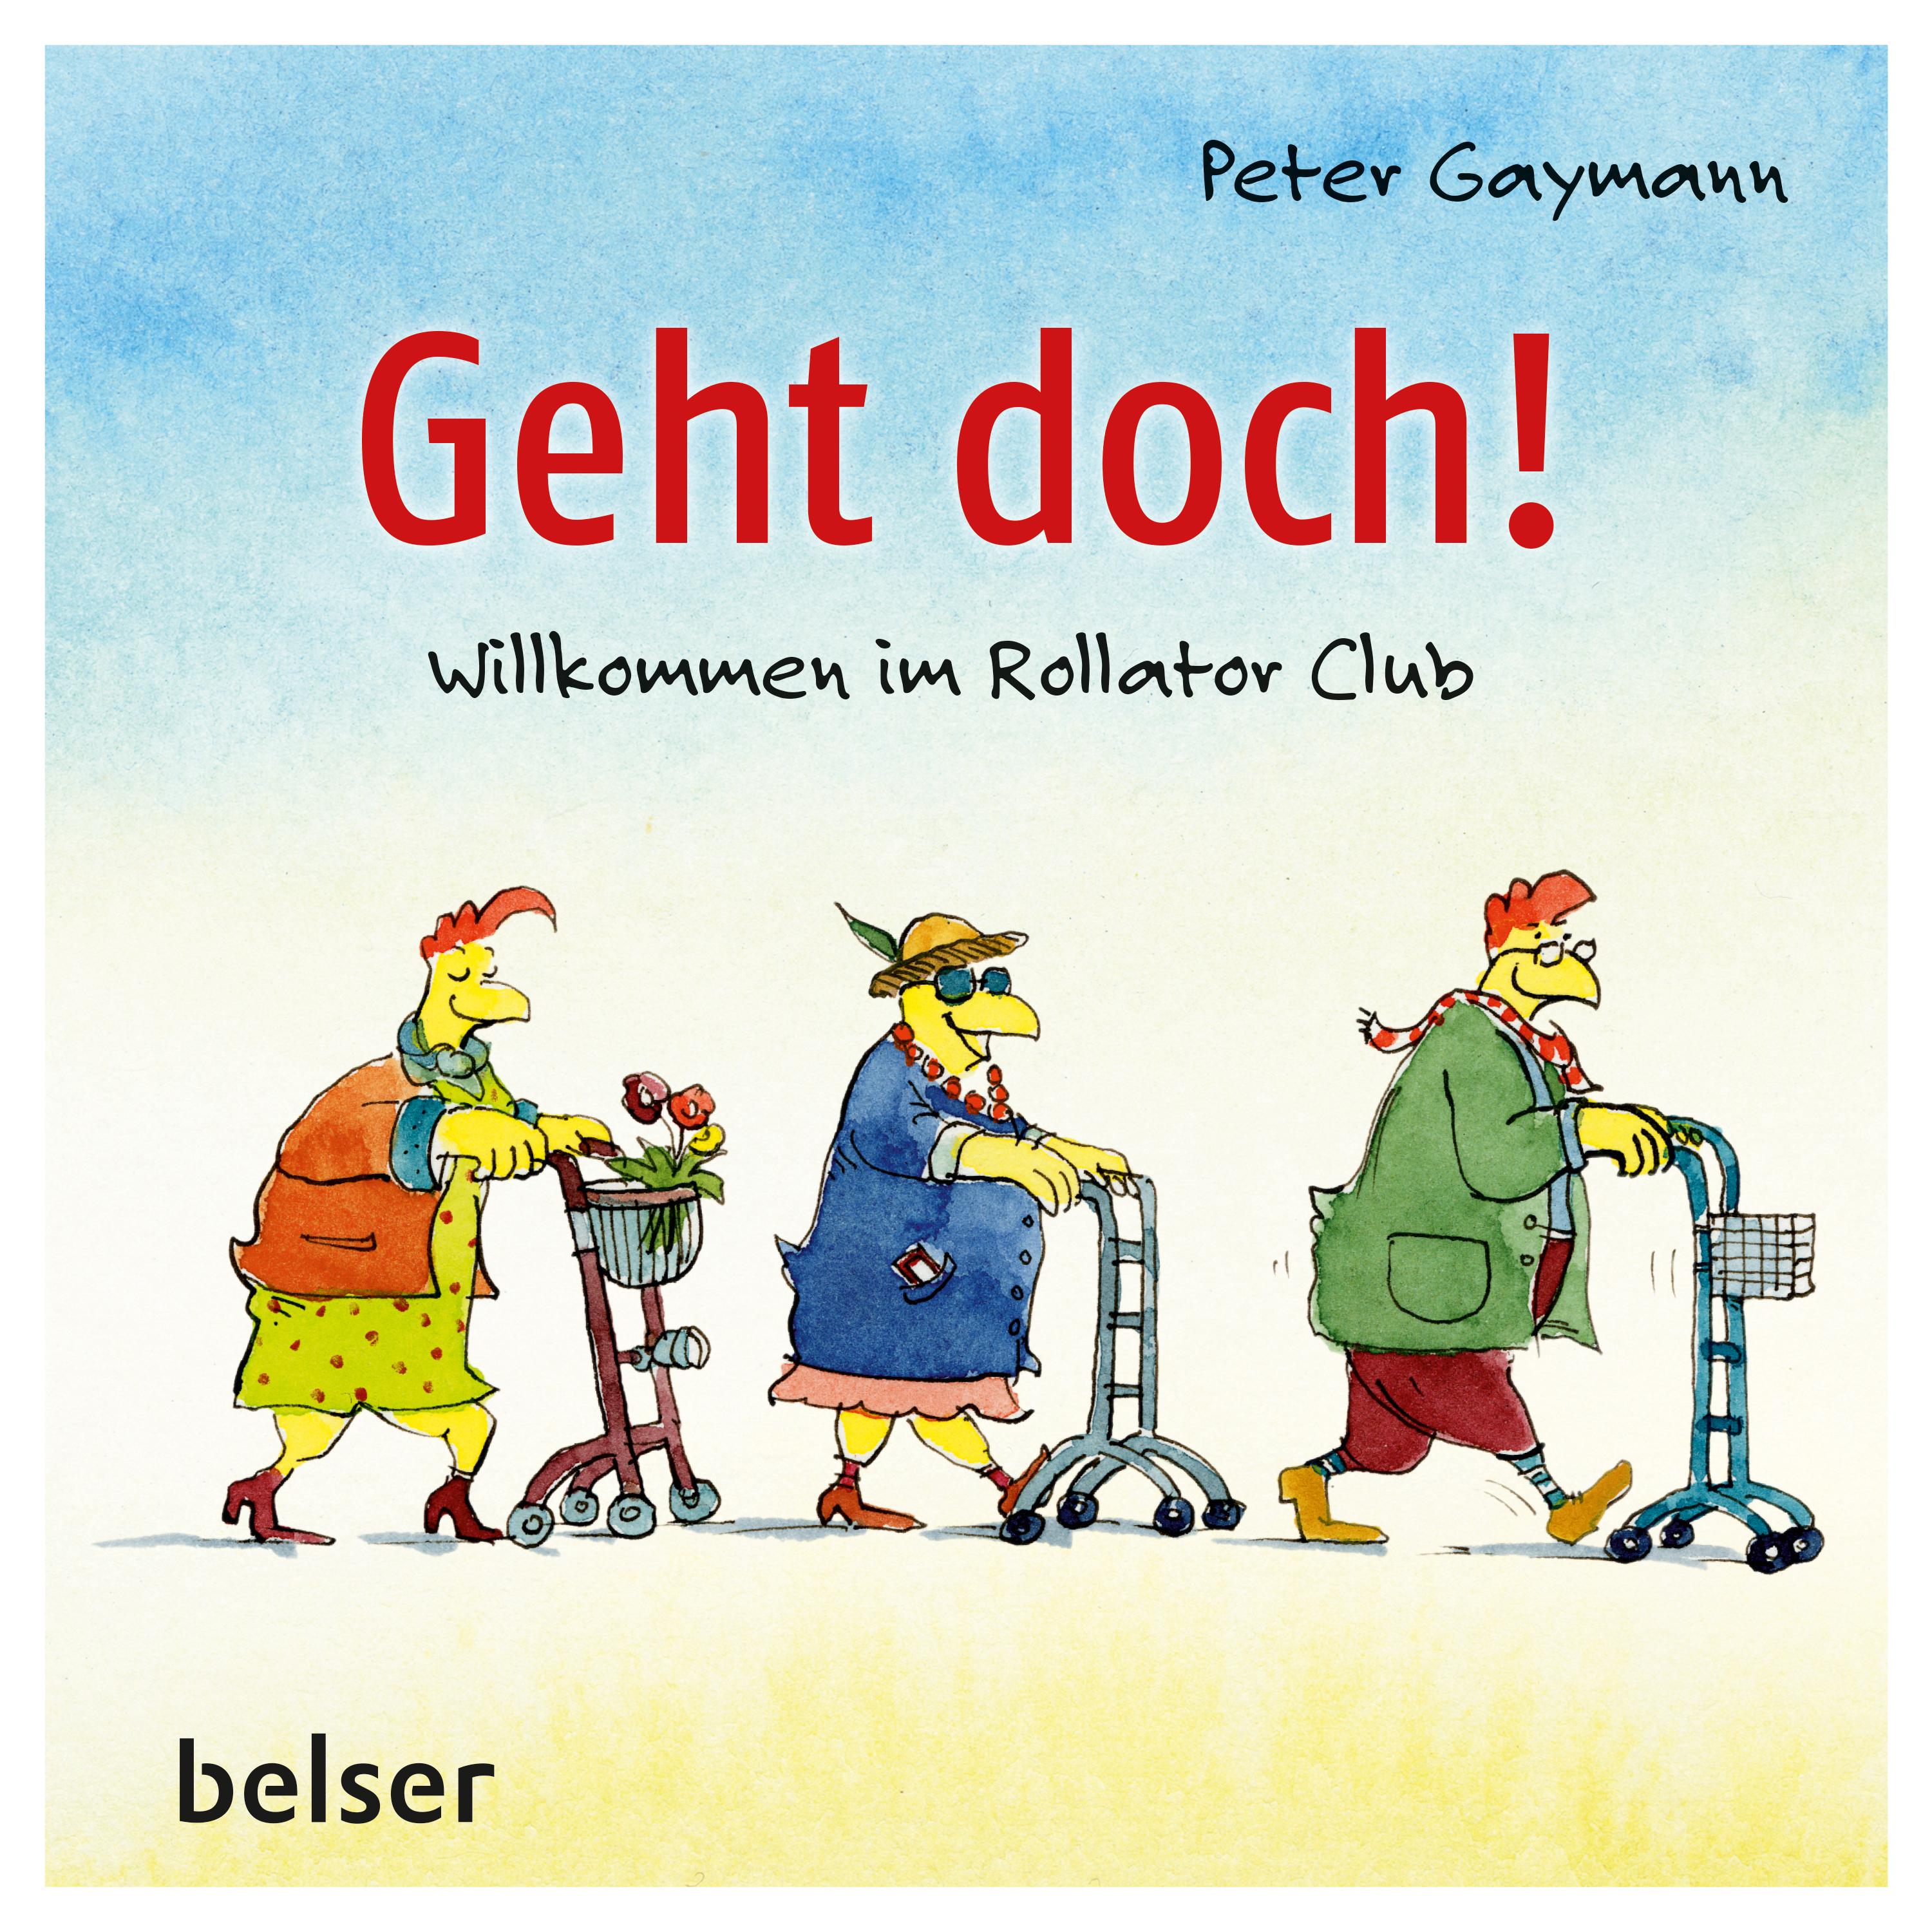 Peter Gaymann Buch Rollator Club